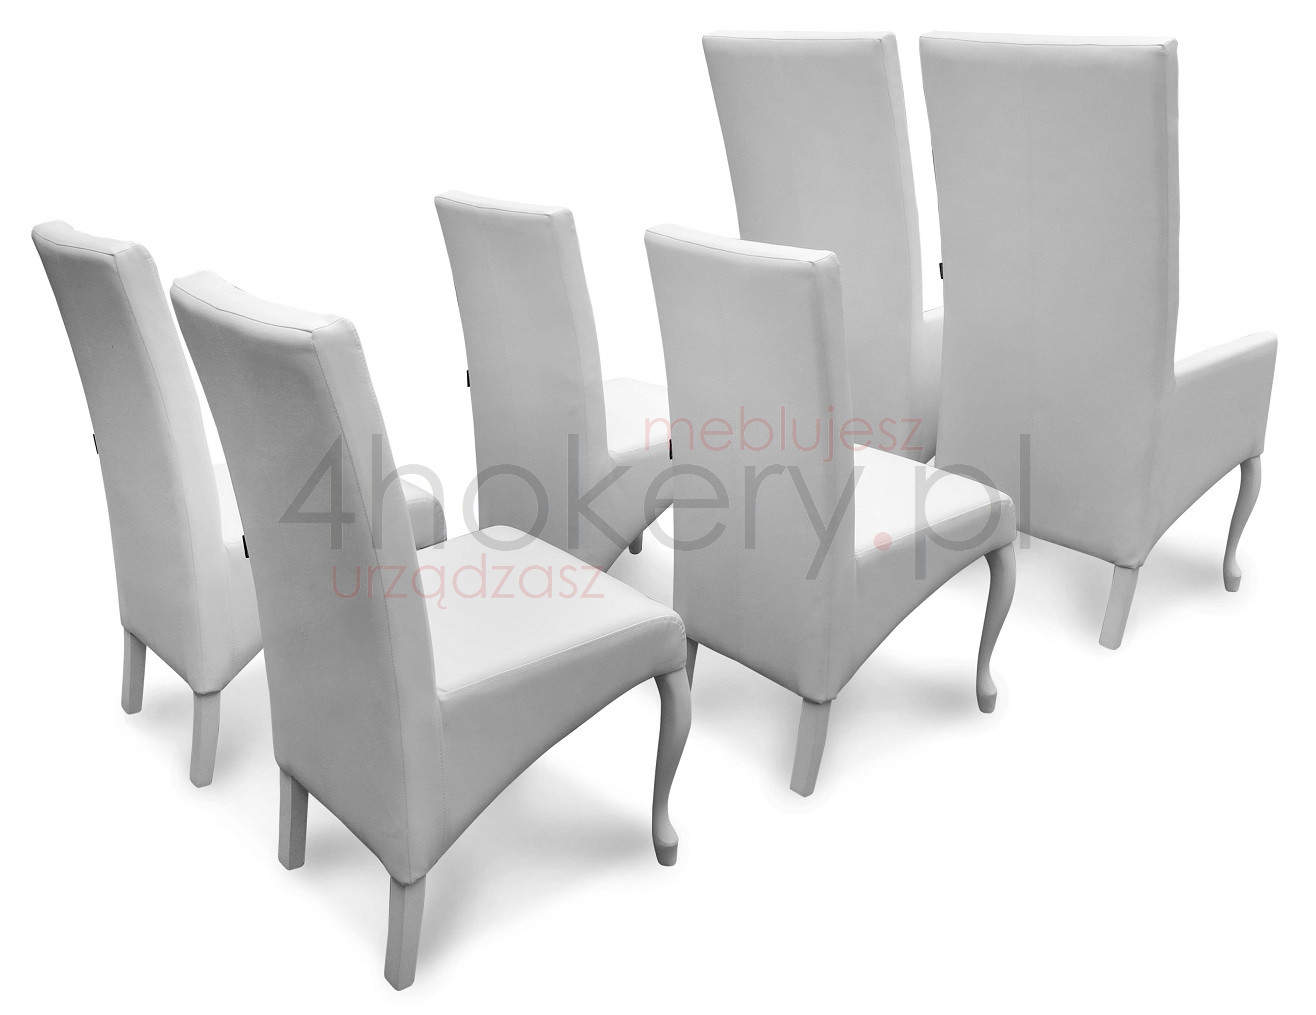 Dwa fotele i cztery wytworne krzesła czyli ślubny orszak na ślubnym kobiercu.